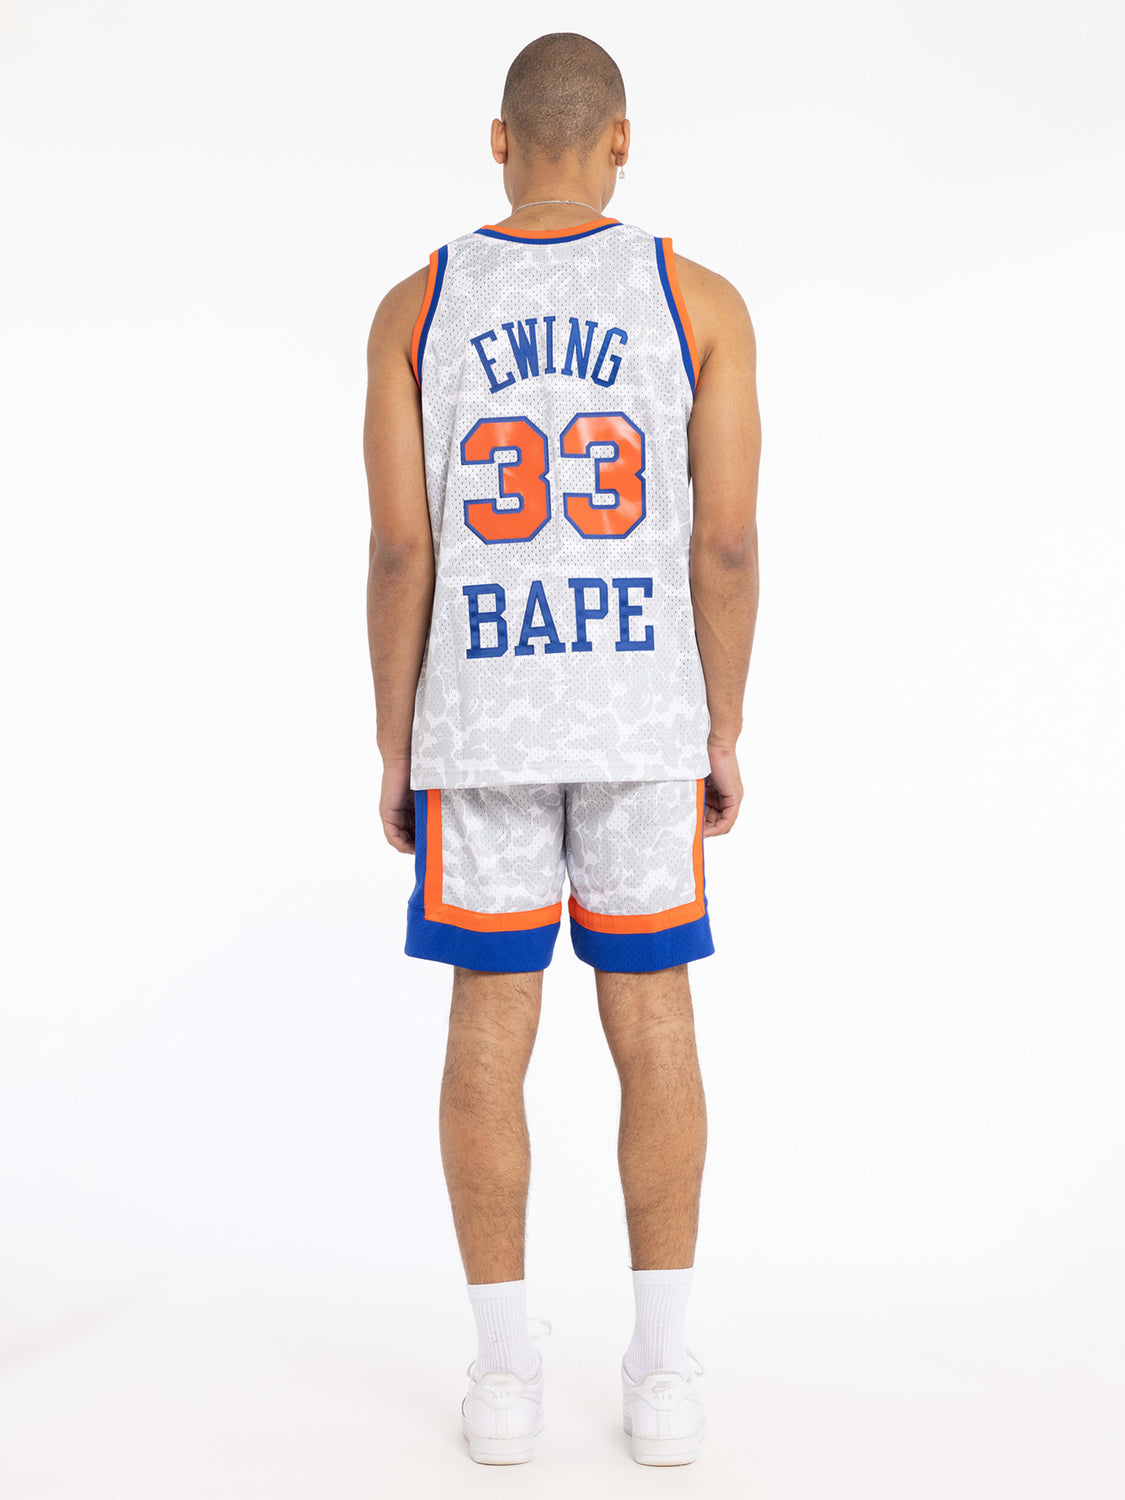 Bape x Mitchell & Ness New York Knicks NBA Jersey | Mitchell & Ness